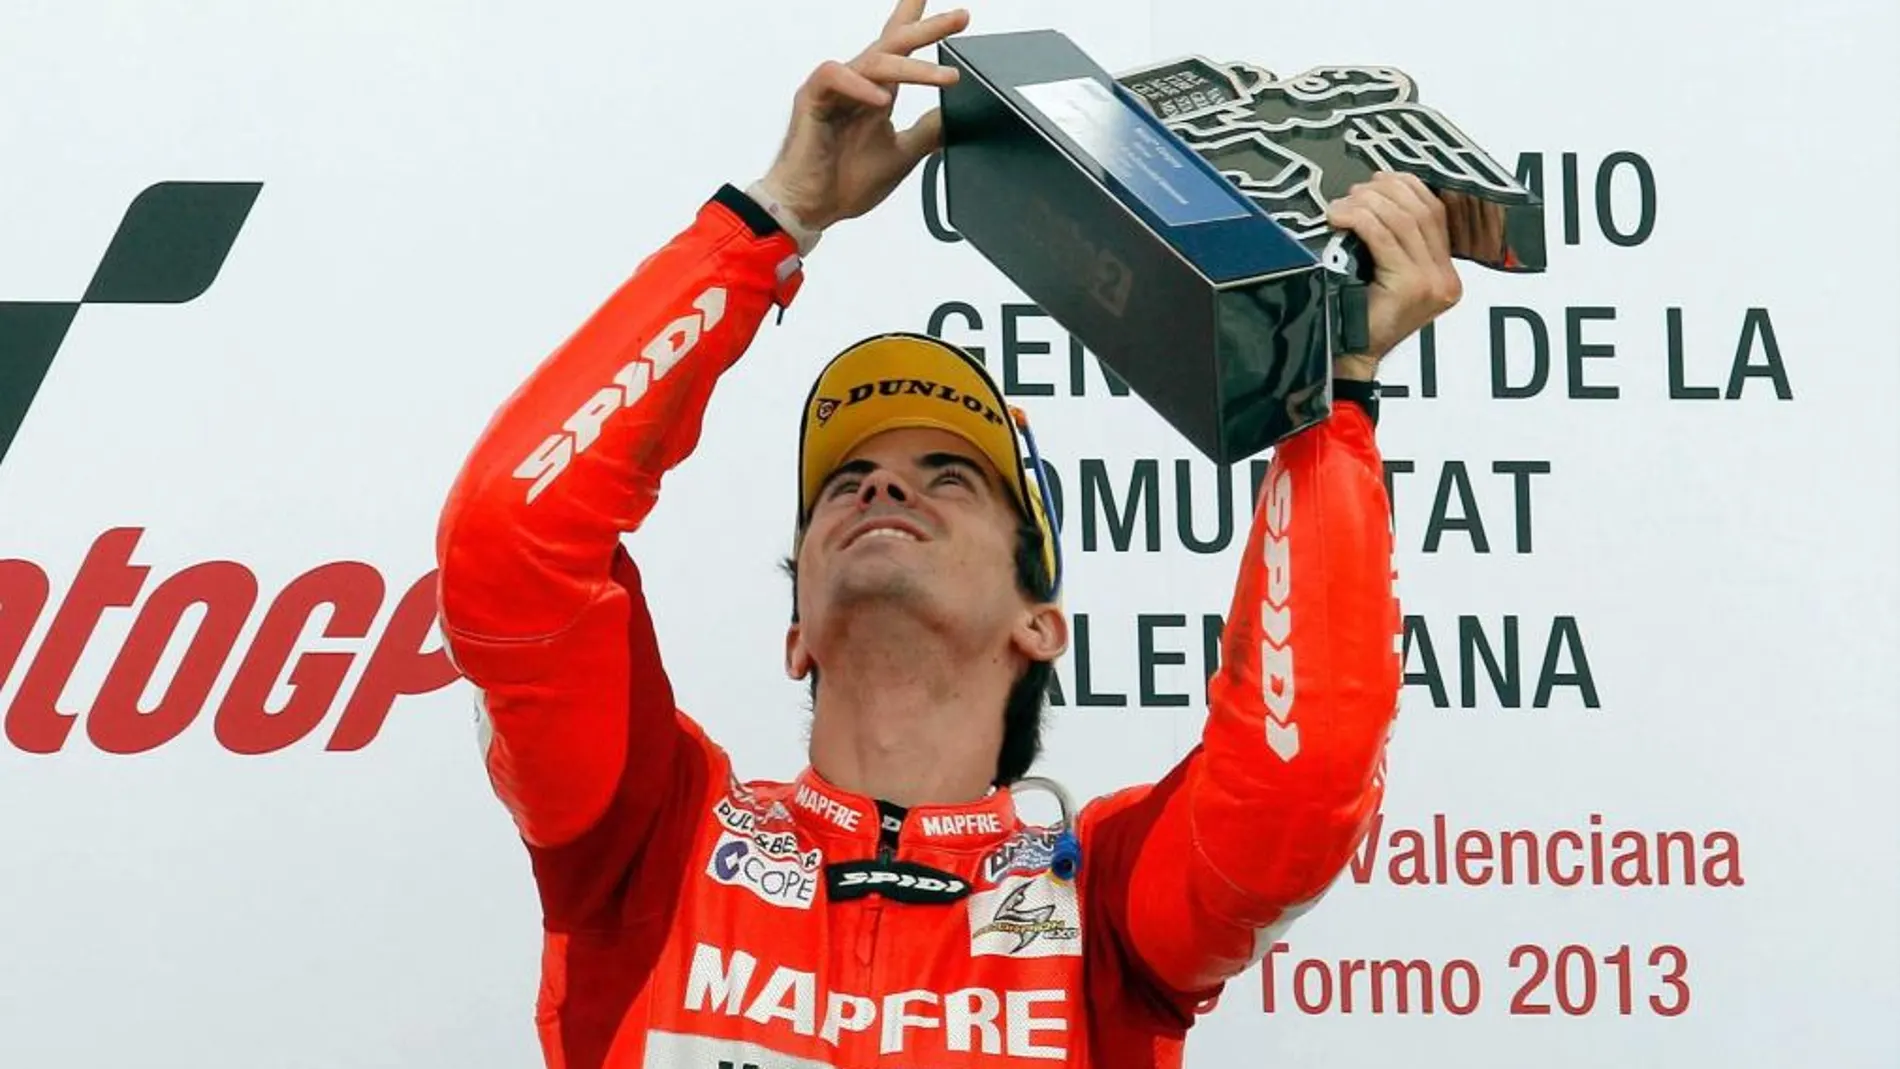 El piloto español Nico Terol muestra su alegría en el podio tras su victoria en la carrera de Moto 2 del Gran Premio de la Comunidad Valenciana